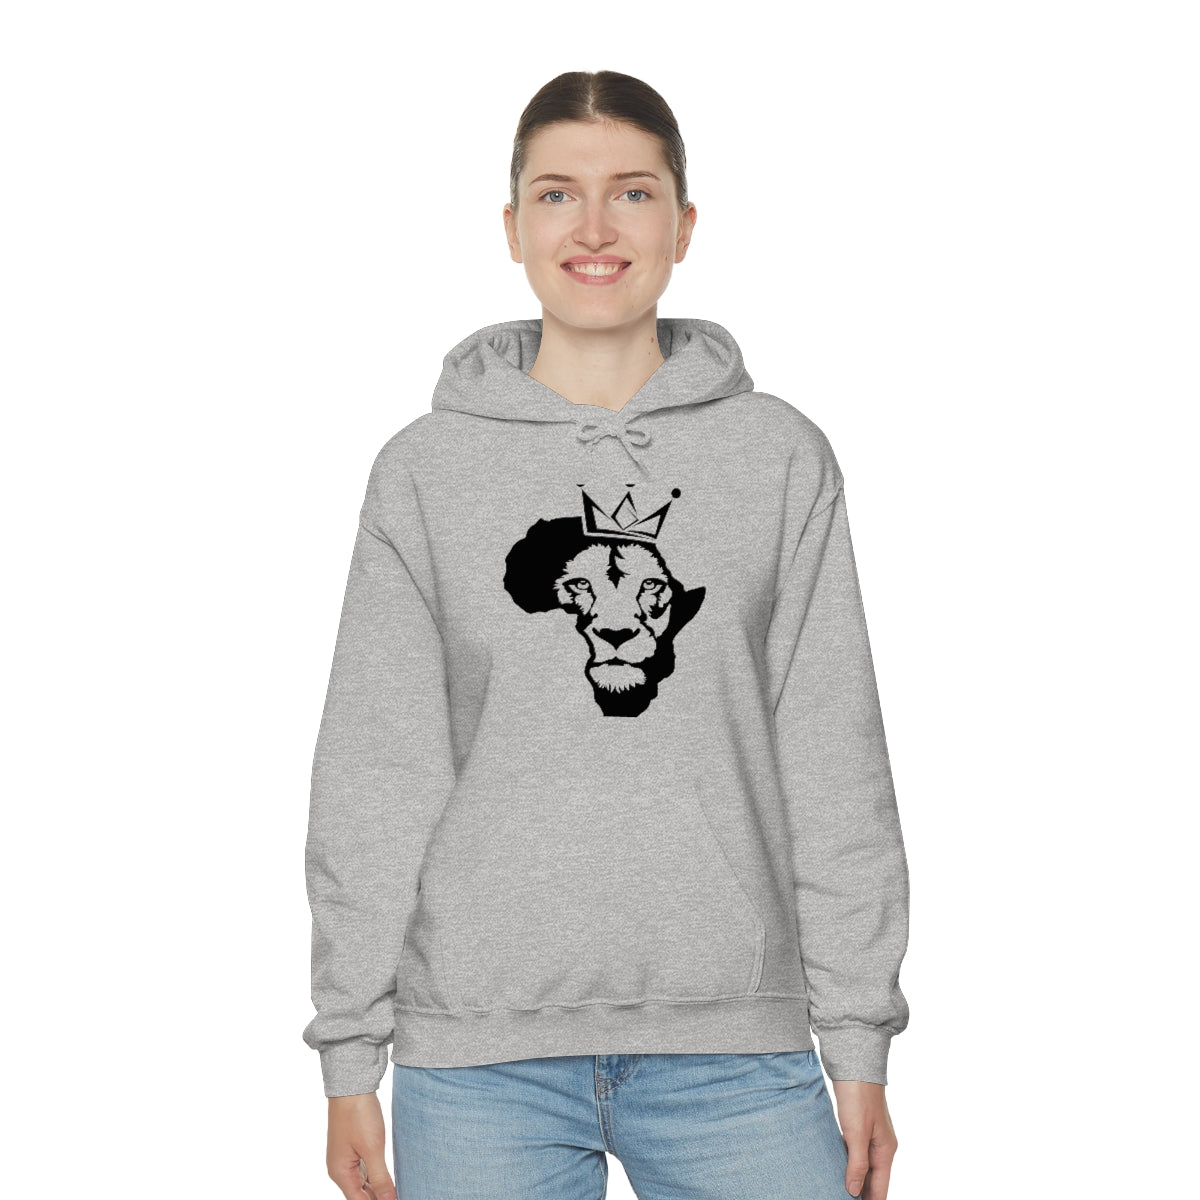 Lion King Unisex Heavy Blend™ Hooded Sweatshirt